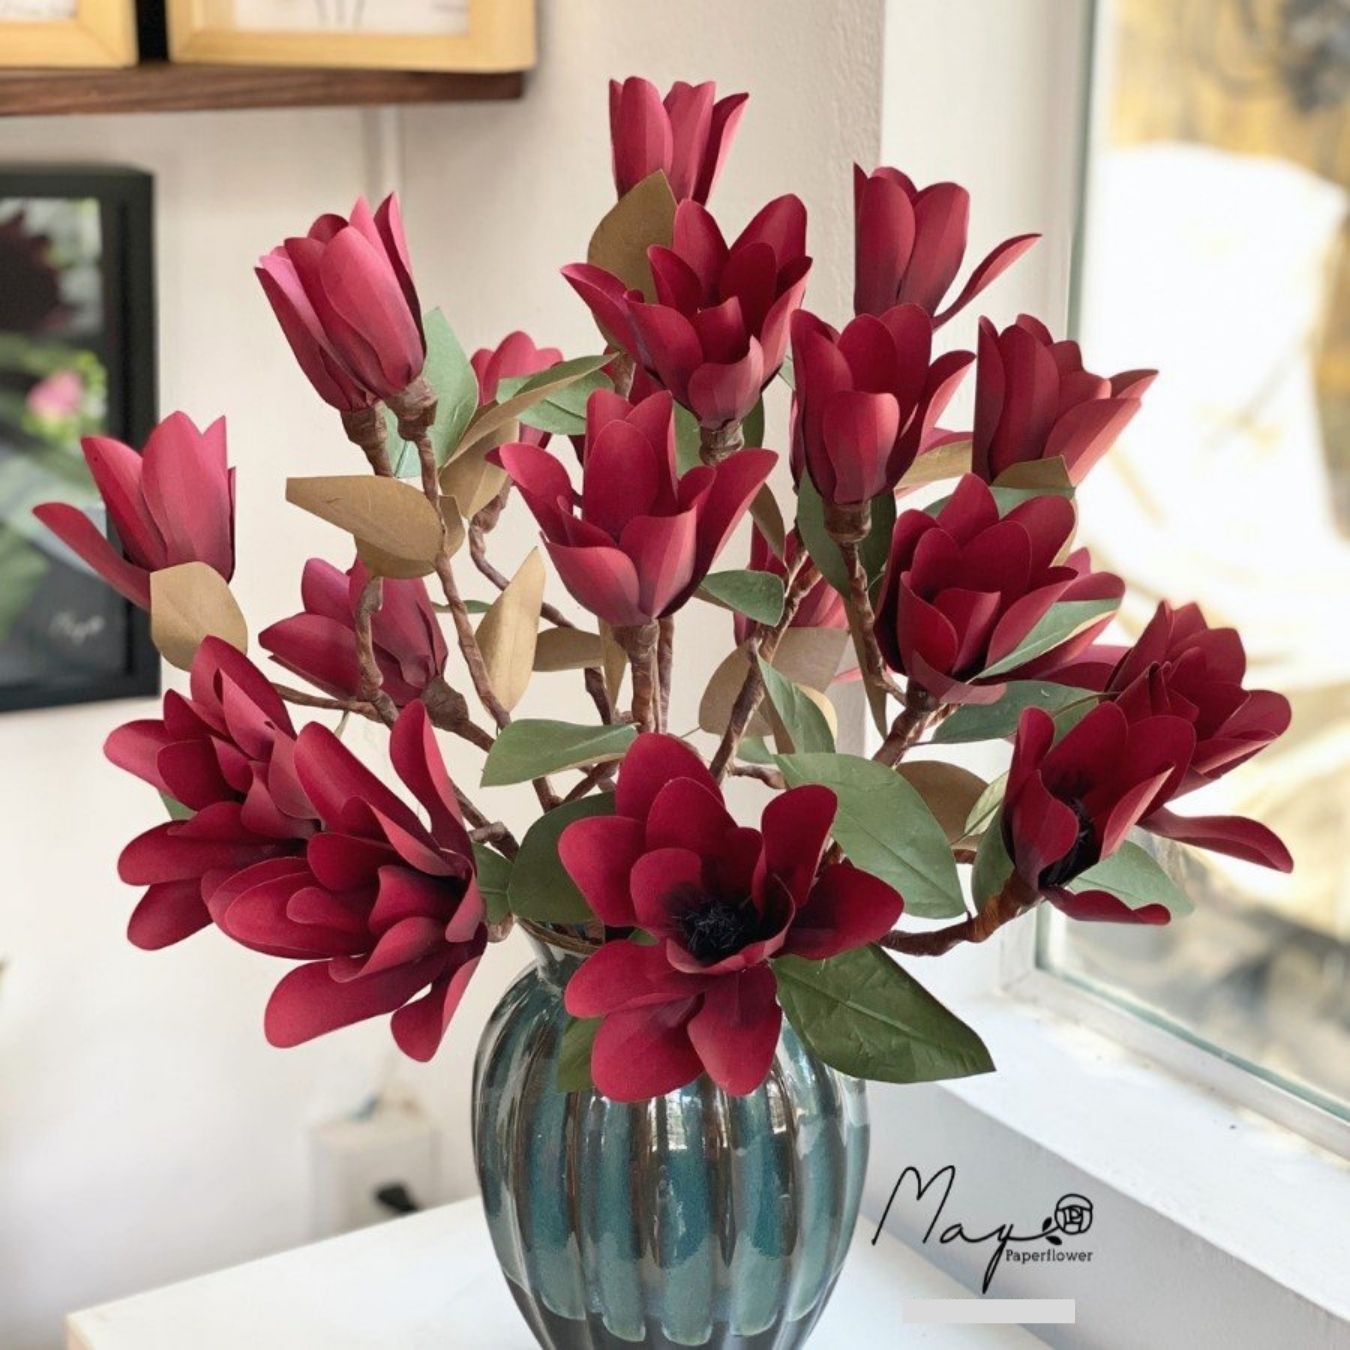 Hoa giấy trang trí, Hoa Mộc Lan đỏ handmade Maypaperflower - hoa giấy nghệ thuật, hoa cắm bình, decor nhà ở văn phòng